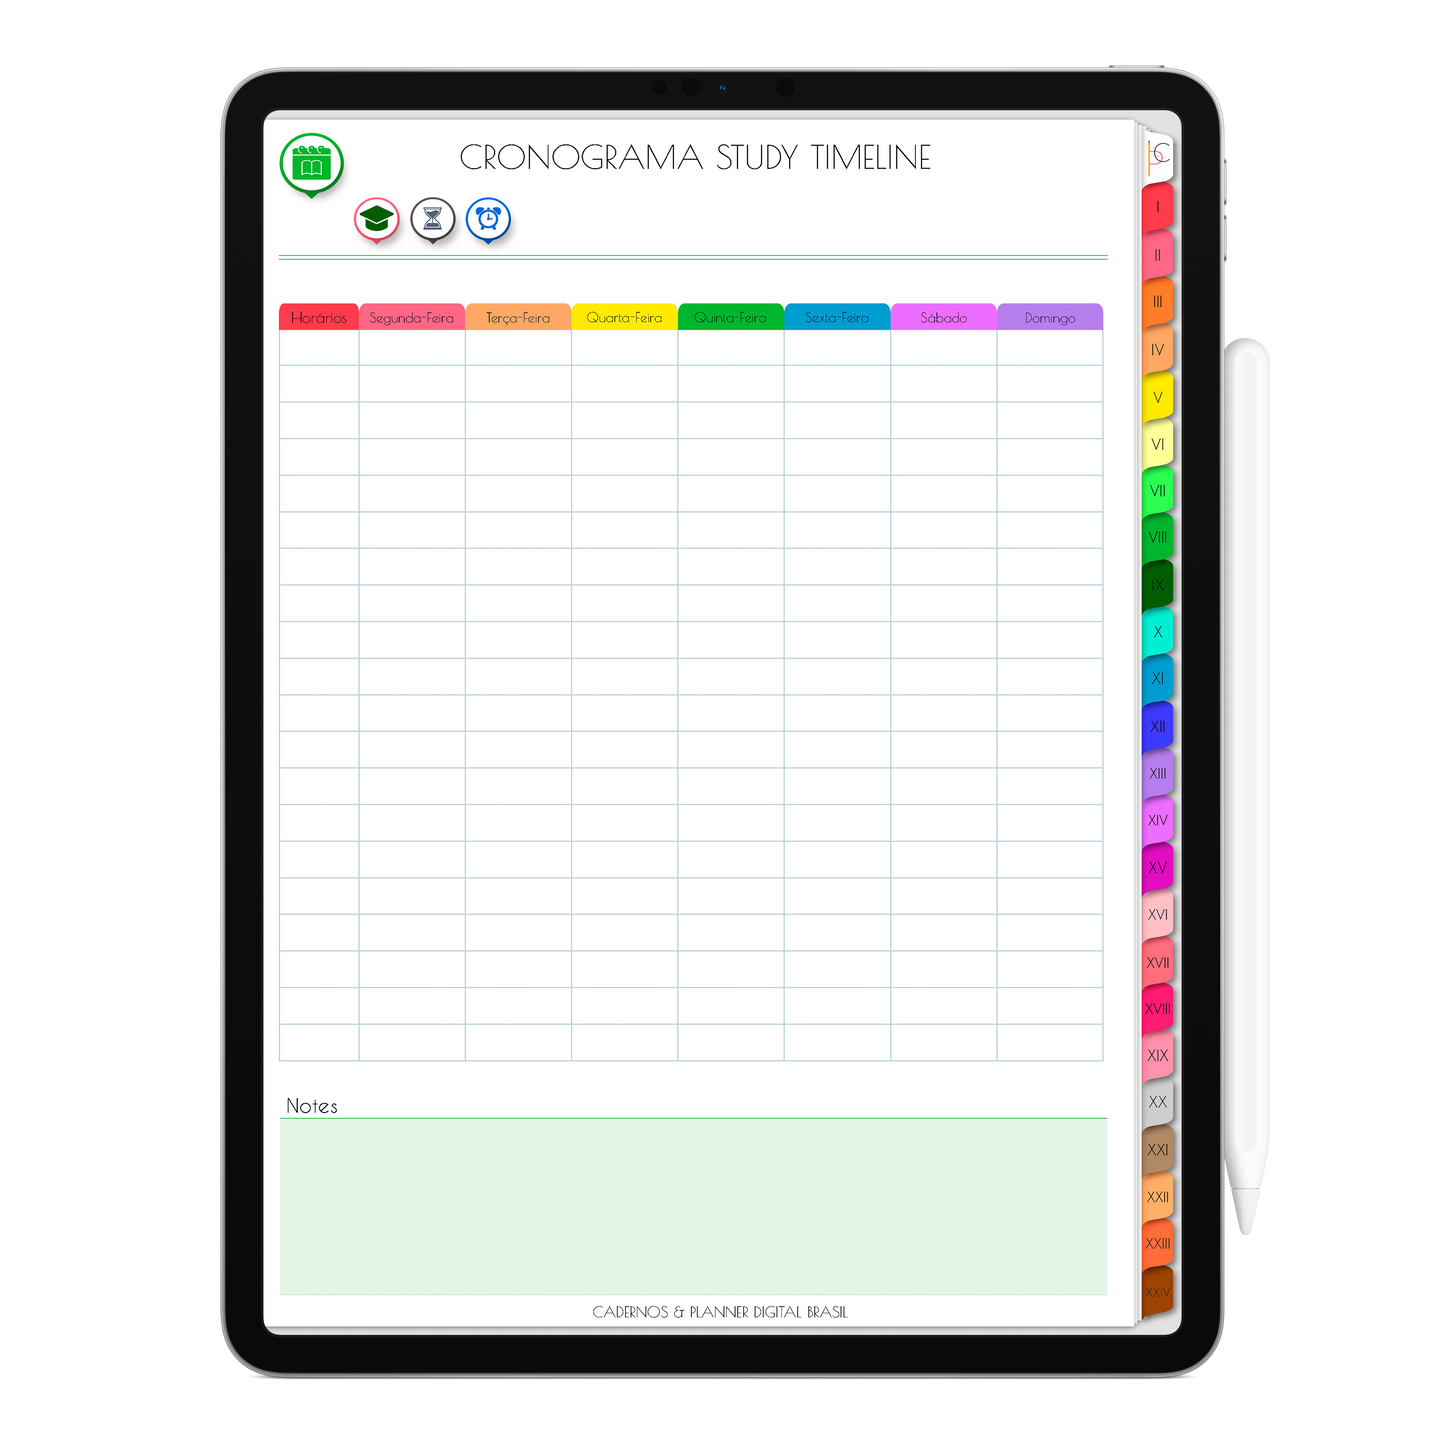 Caderno Digital Colors 24 Matérias Pureza e Verdade • Para iPad e Tablet Android • Download instantâneo